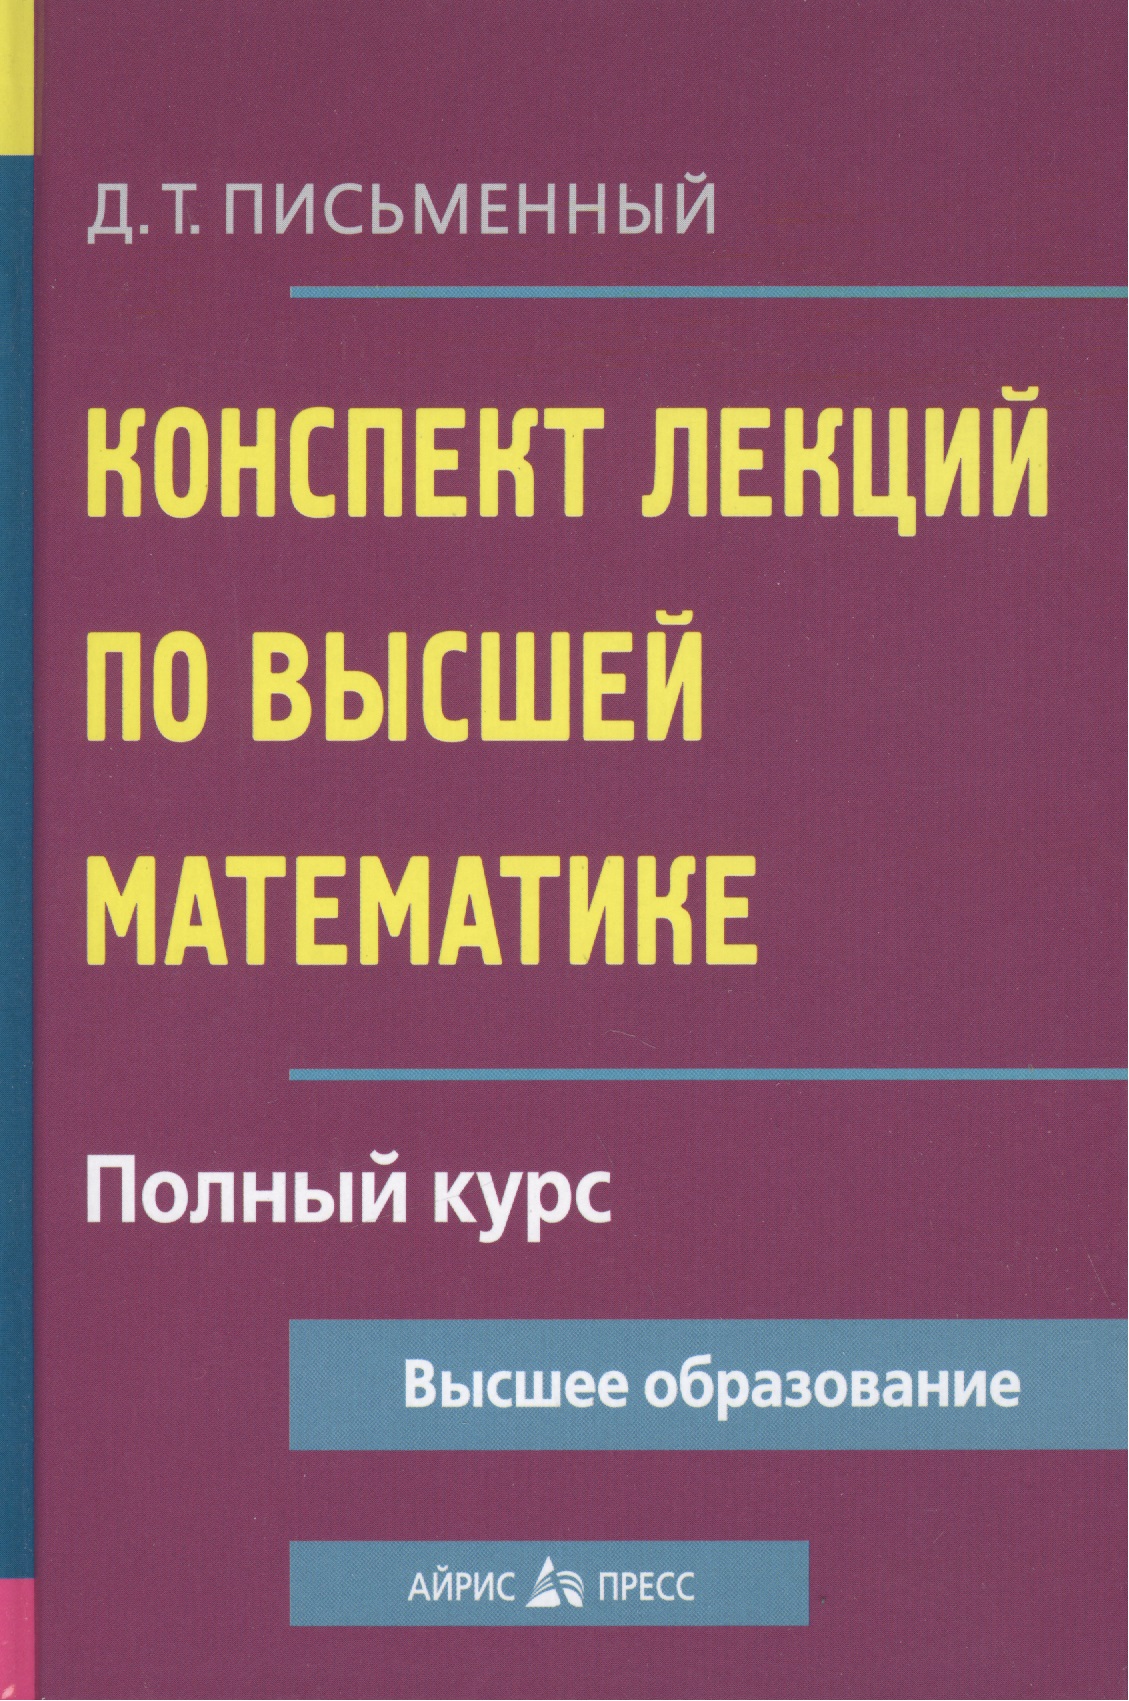 Конспект лекций по высшей математике: полный курс / 8-е изд.